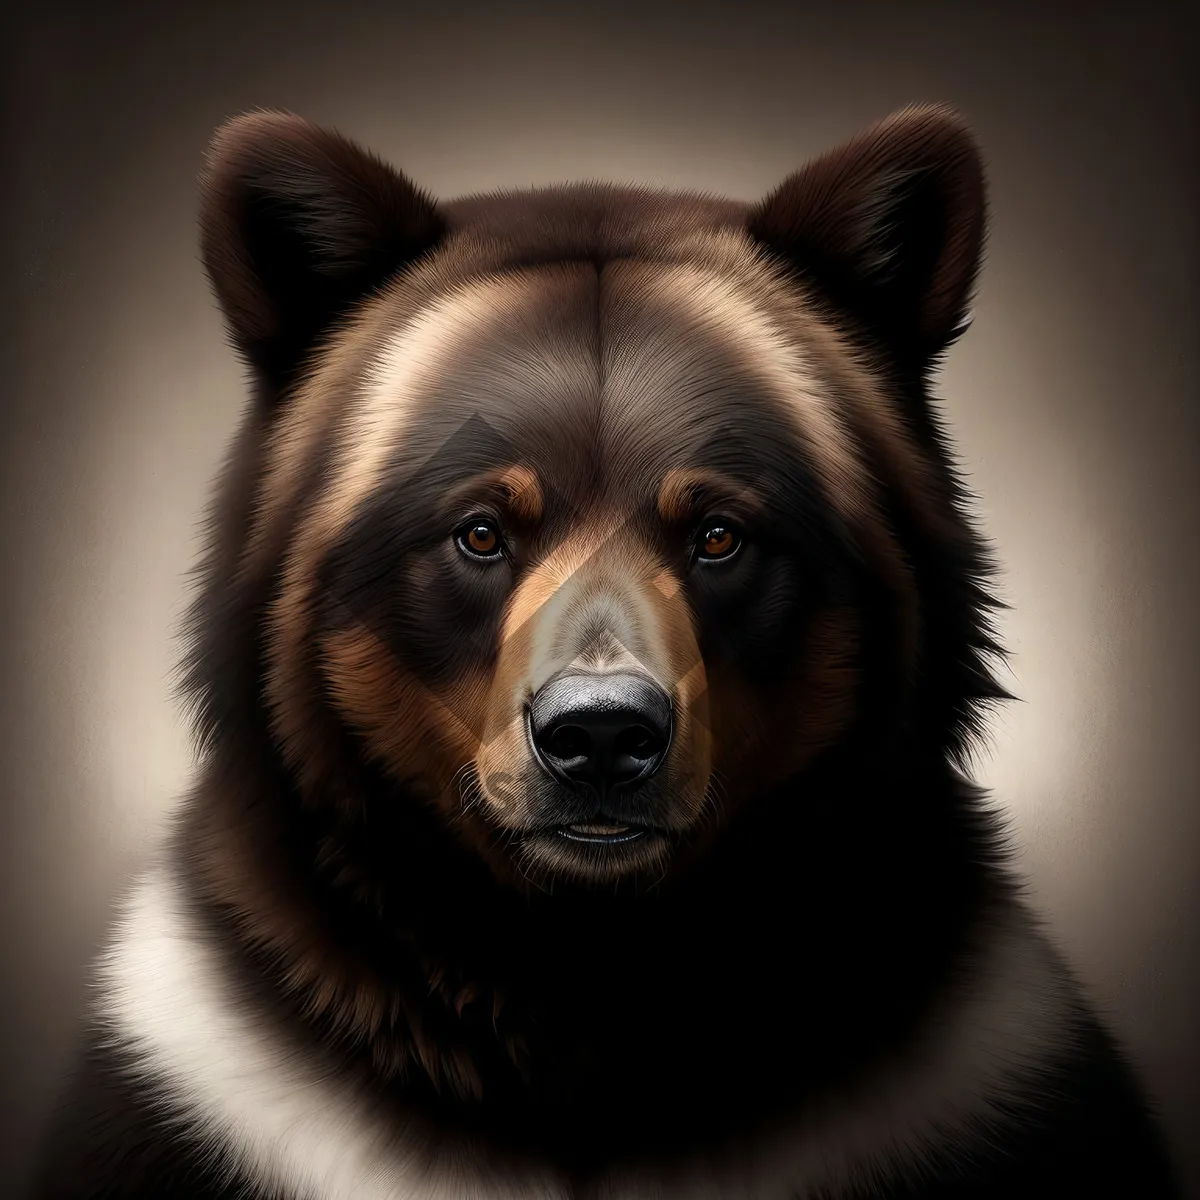 Picture of Adorable Border Collie Shepherd Dog - Cute Pet Portrait